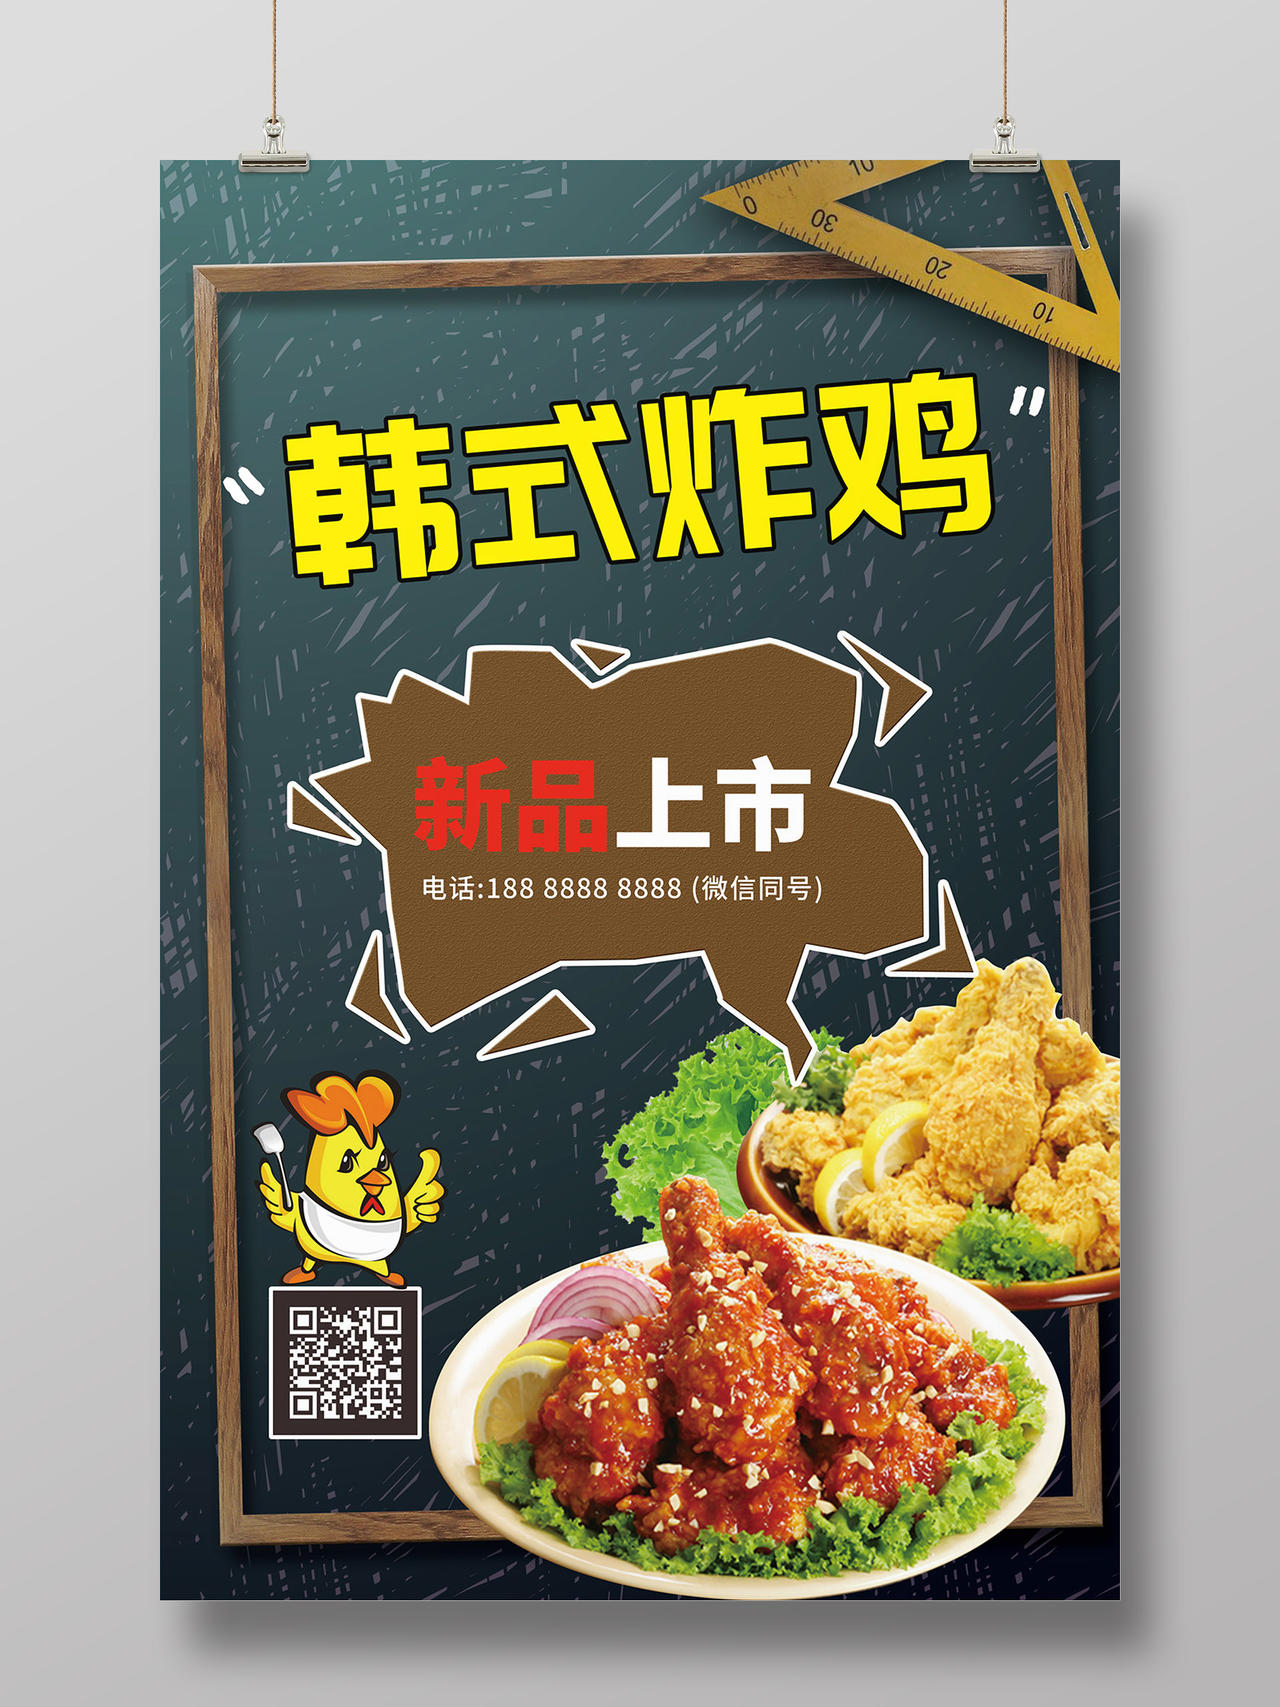 墨绿色黑板创意卡通韩式炸鸡新品上市海报